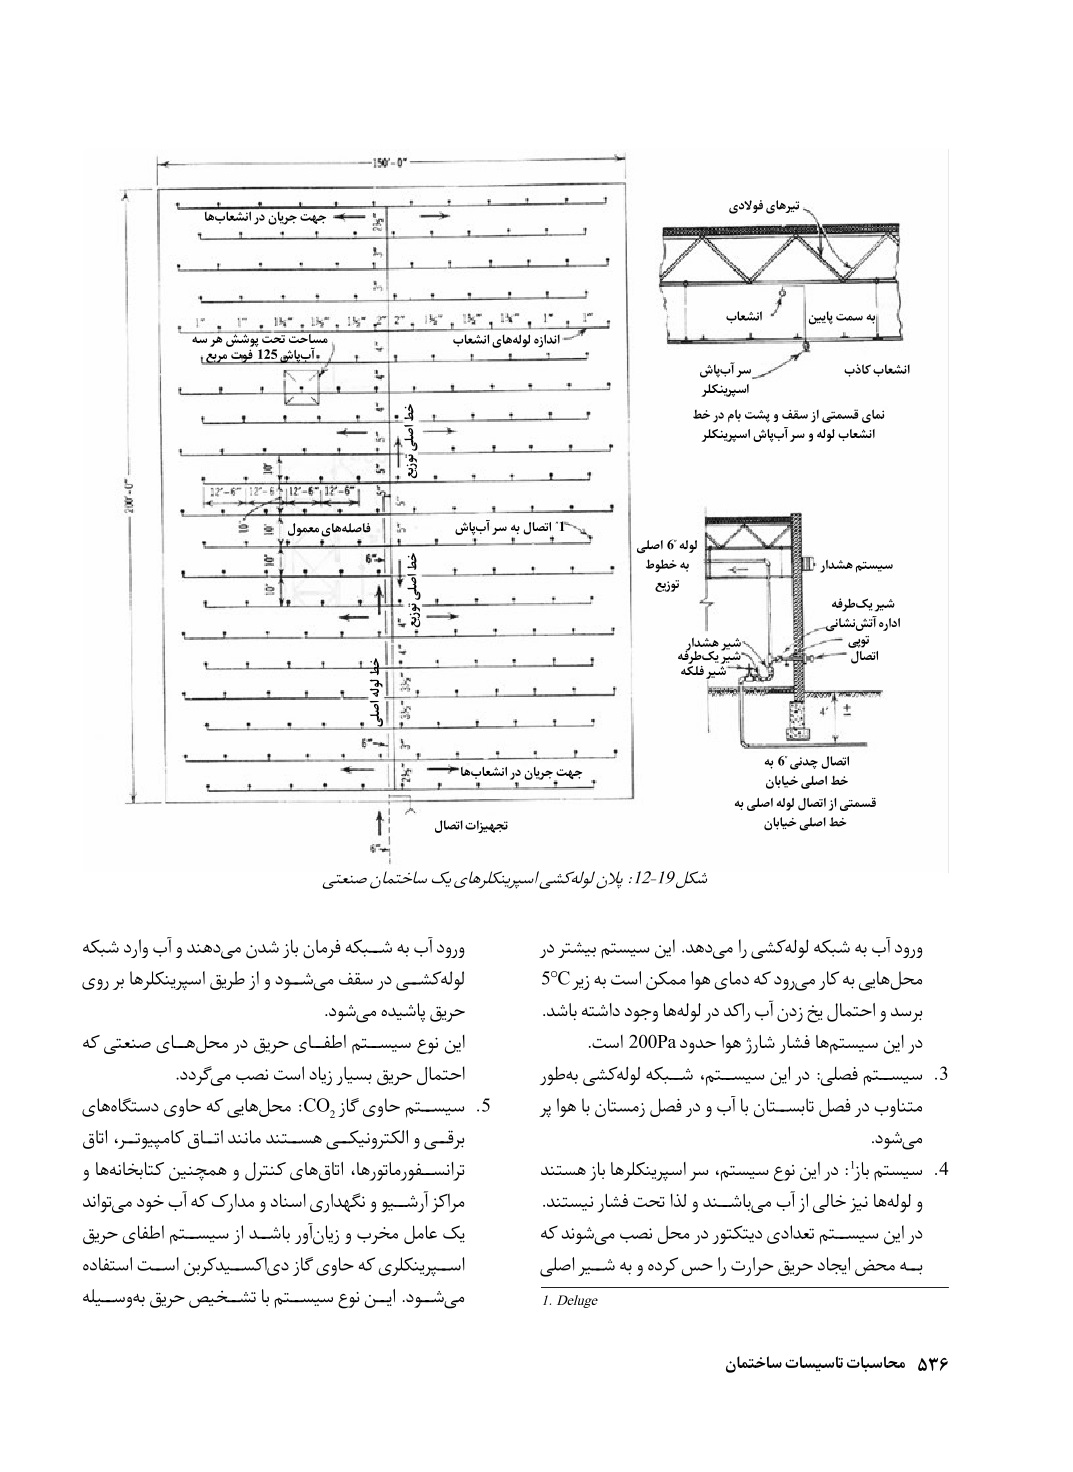 دانلود پی دی اف کتاب محاسبات تسیسات ساختمان از رونالد بغوزیان - 820 صفحه PDF